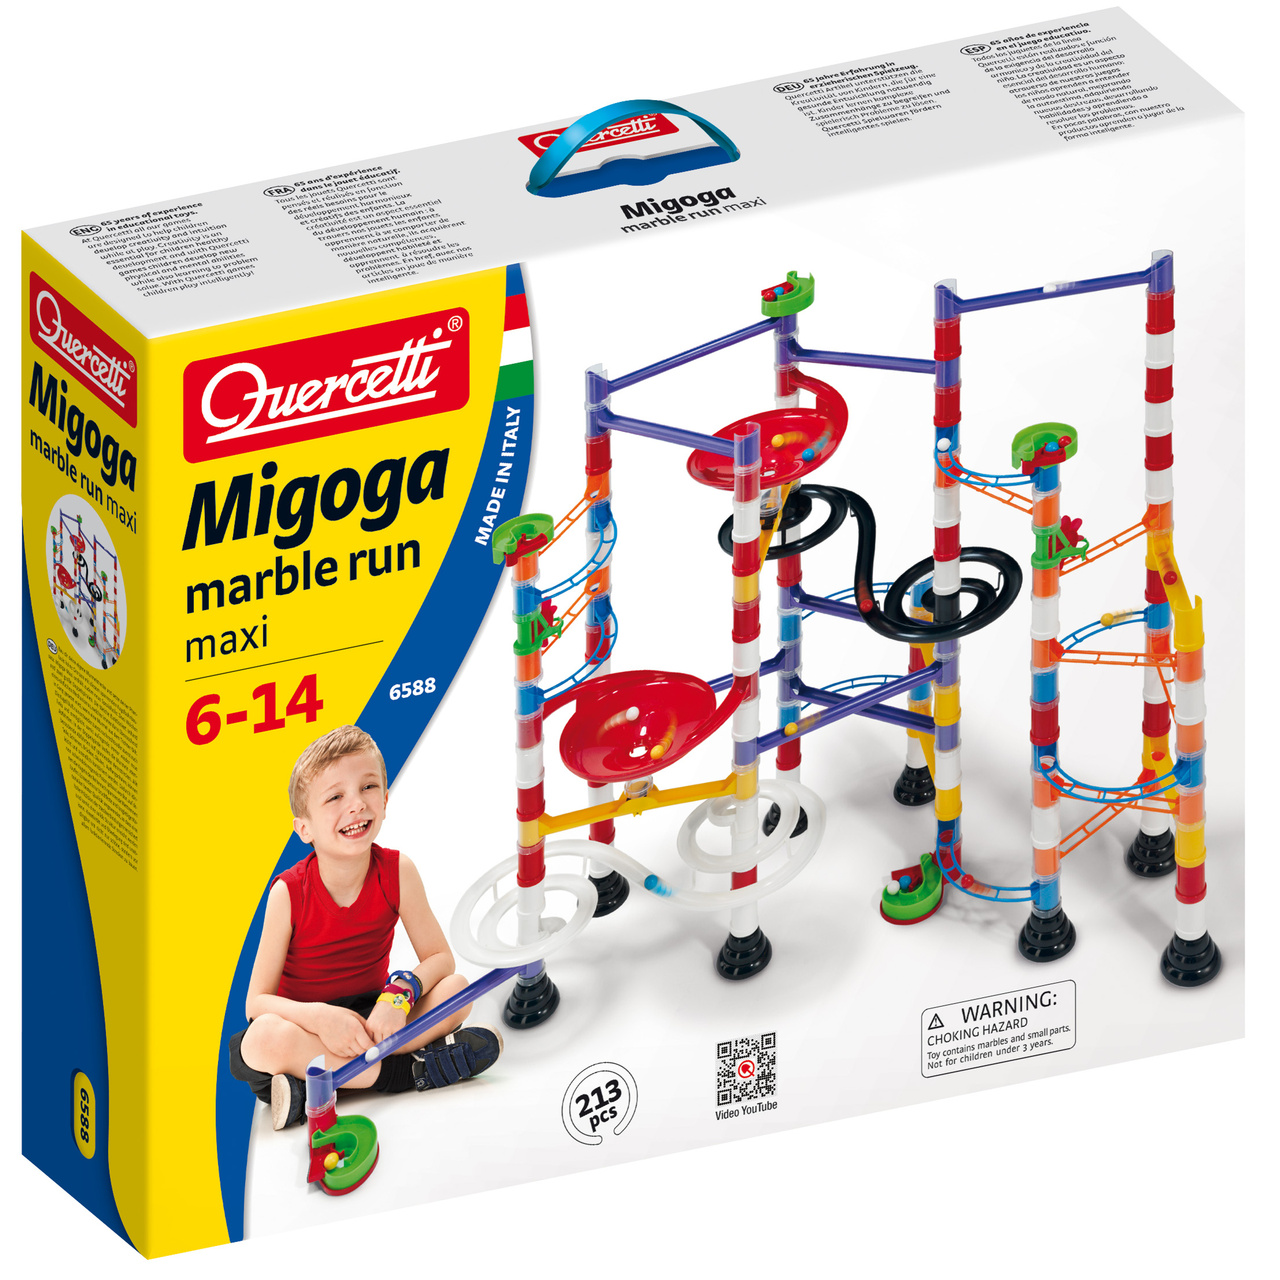 Construction toys quercetti migoga maxi